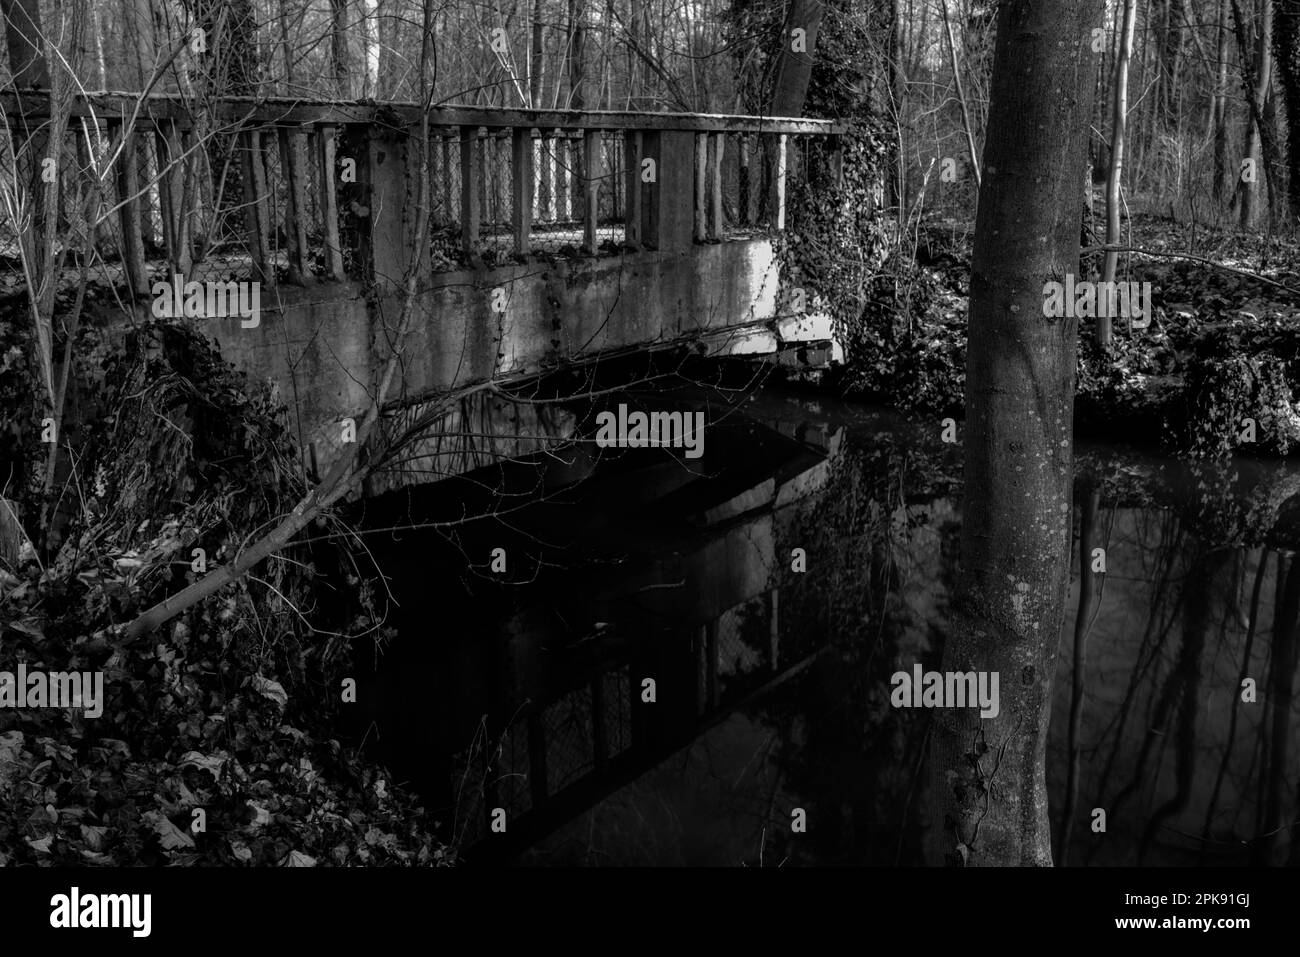 Pont en béton au-dessus d'une petite rivière dans la forêt, photographie en noir et blanc Banque D'Images